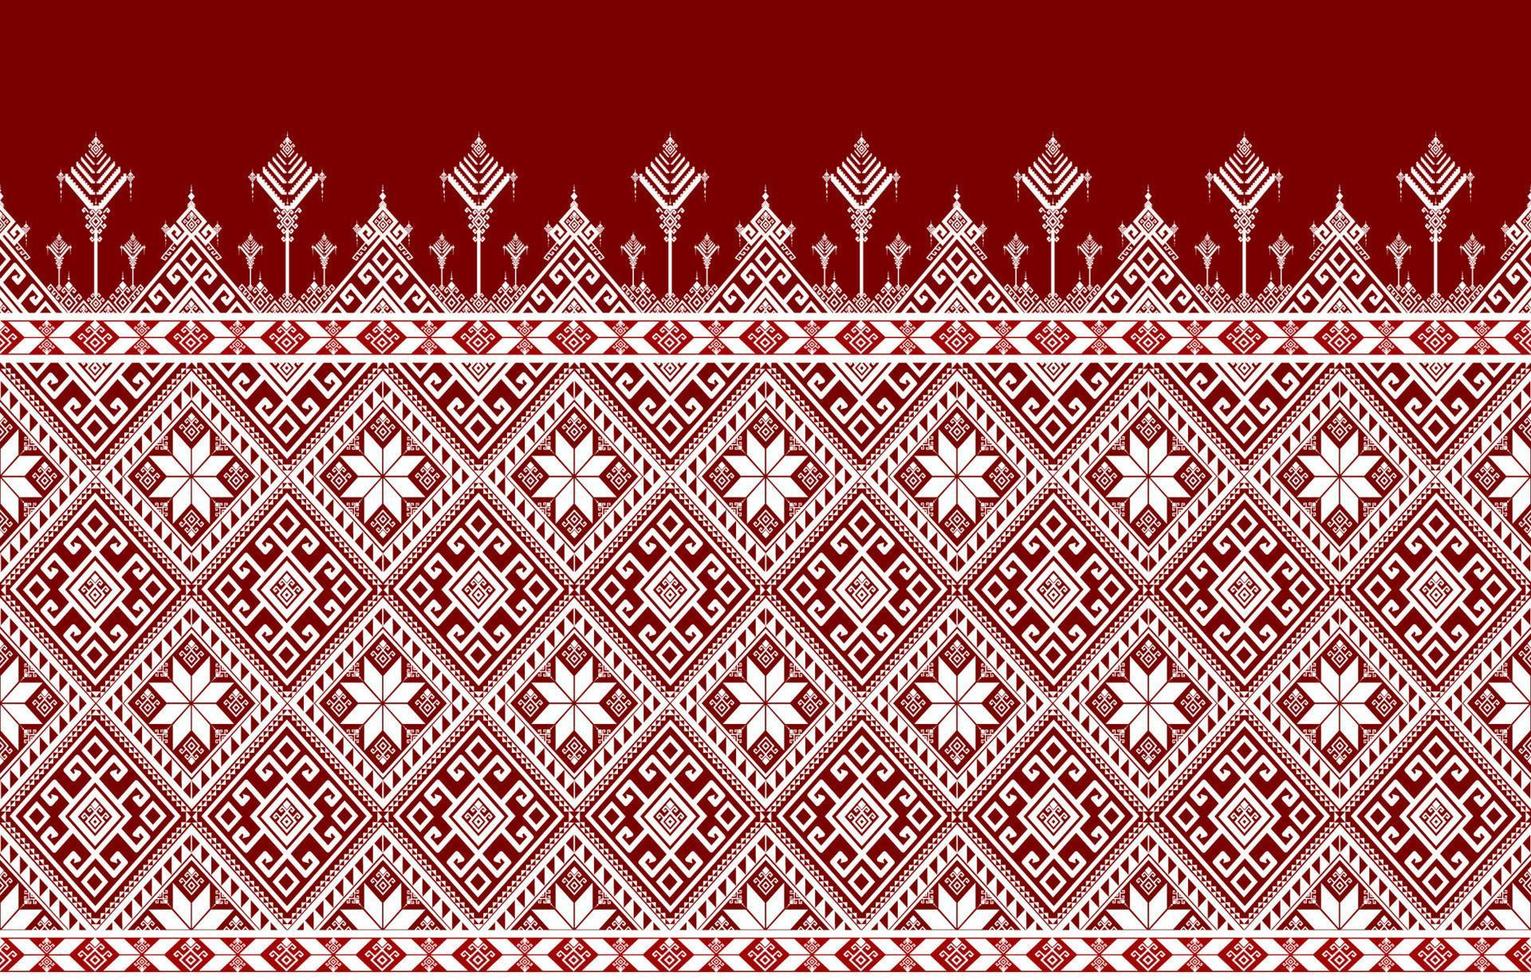 zweifarbiges abstraktes geometrisches ethnisches Muster. für teppich, tapeten, kleidung, verpackung, batik, stoff, fliesen, hintergrund, vektorillustration. Musterstil. vektor